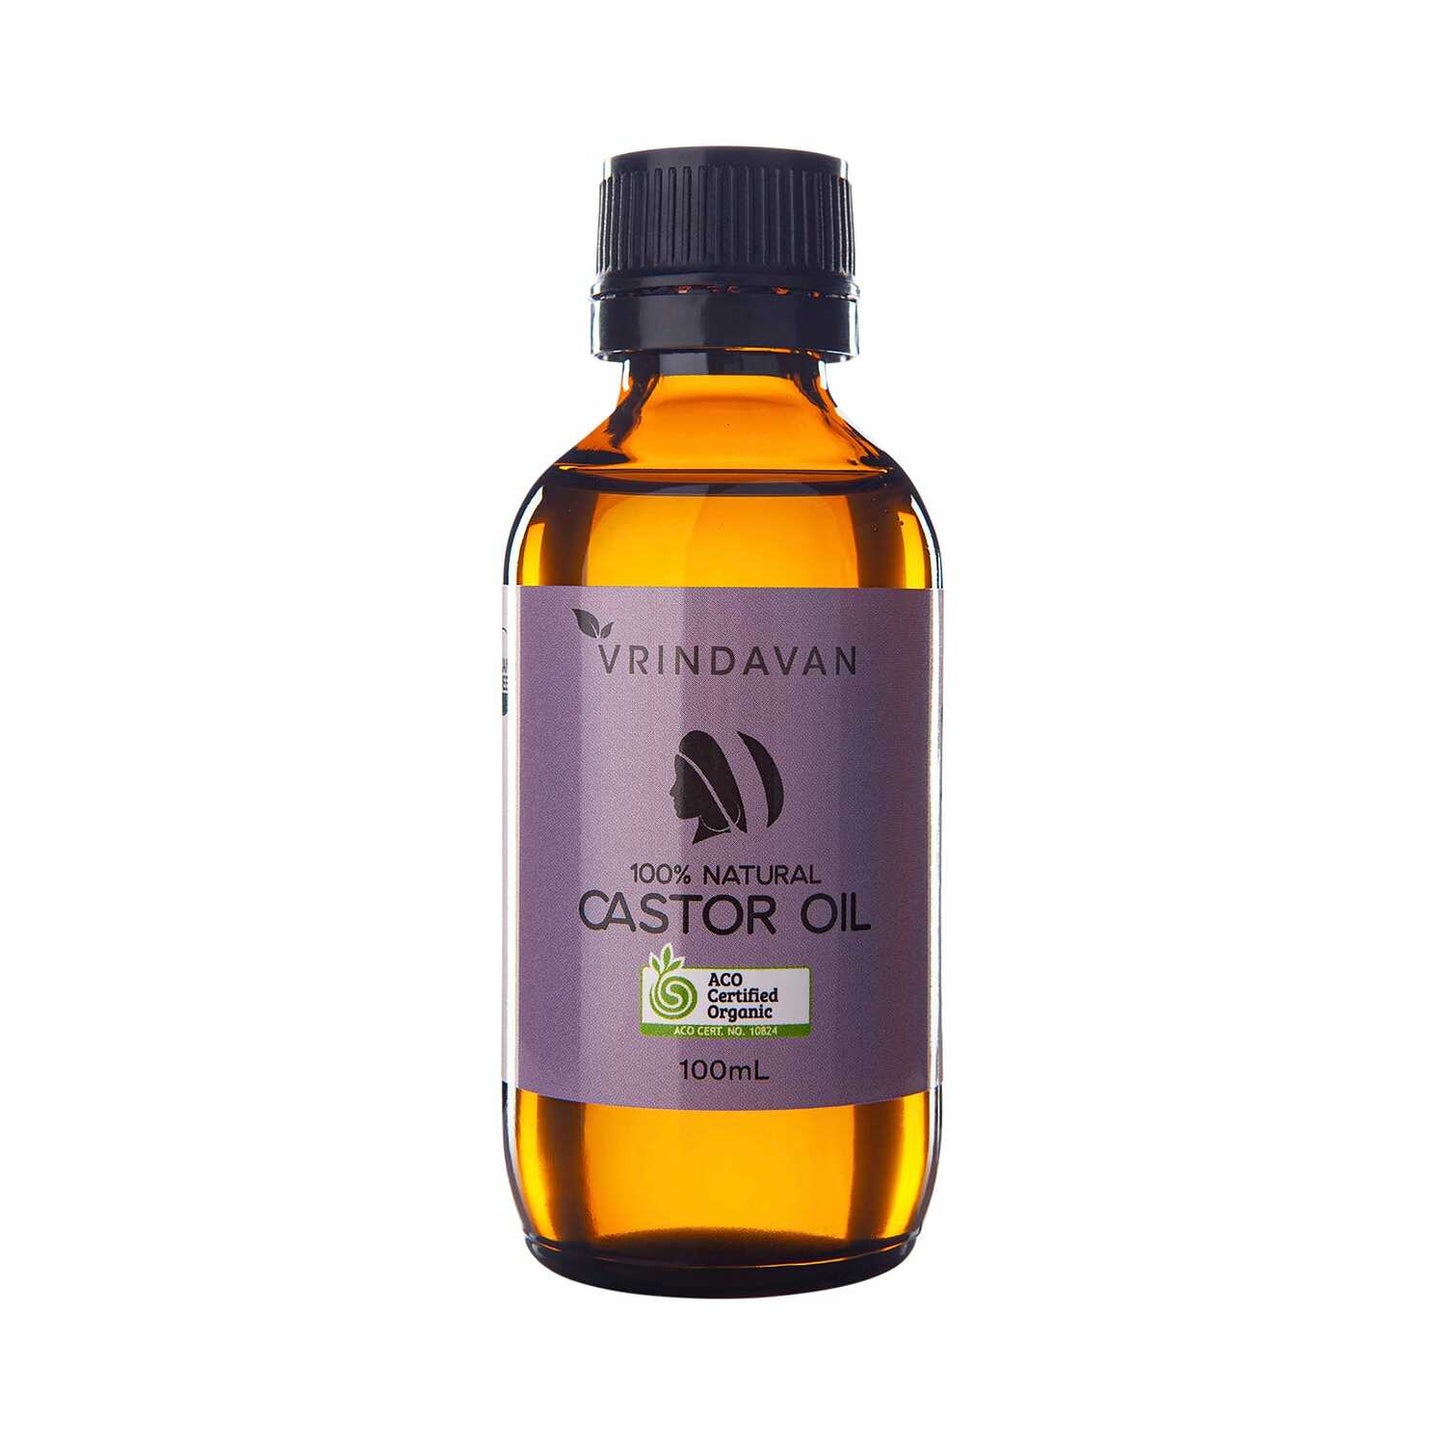 Vrindavan 100% Natural Castor Oil - Certified Organic - 100mL NEW Amber glass bottle